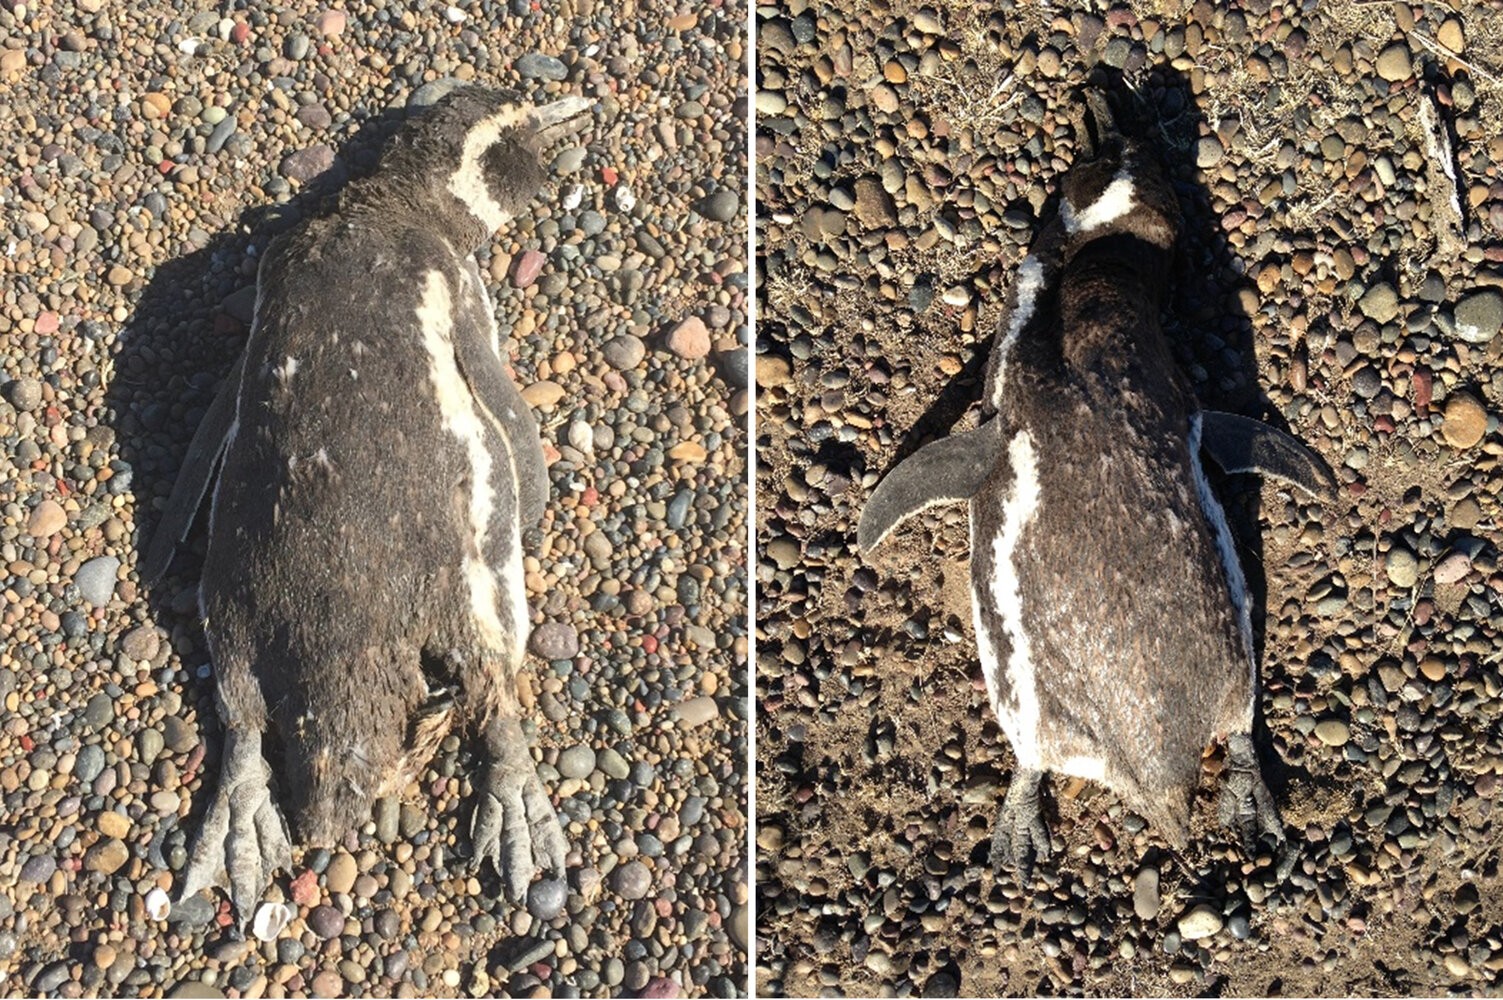 Imagens de dois pinguins-de-magalhães adultos que morreram na onda de calor de 19 de janeiro de 2019. Os dois cadáveres foram encontrados em postura de alívio do calor, com os pés estendidos atrás do corpo, nadadeiras para fora e bicos abertos, o que sugere que morreram ofegantes. (Foto: Katie Holt/Universidade de Washington)